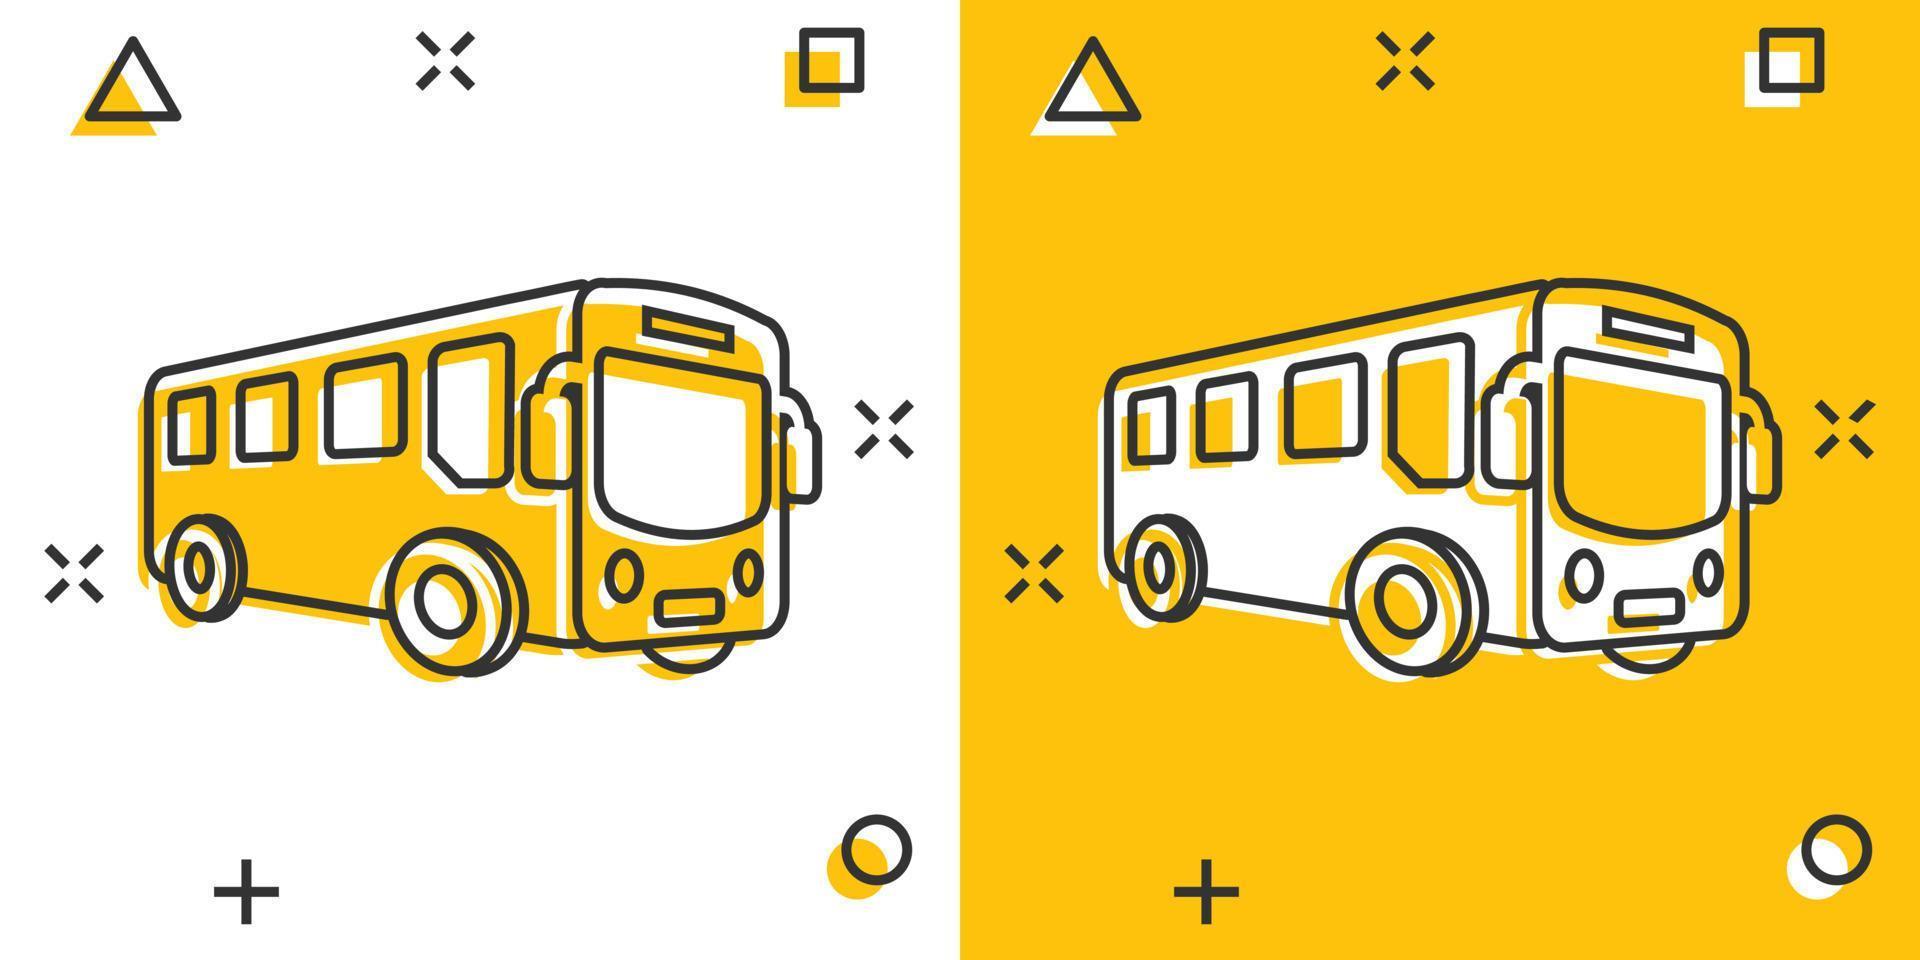 icono de autobús escolar en estilo cómico. ilustración de dibujos animados de vector de autobus sobre fondo blanco aislado. efecto de salpicadura del concepto de negocio de transporte de autocares.